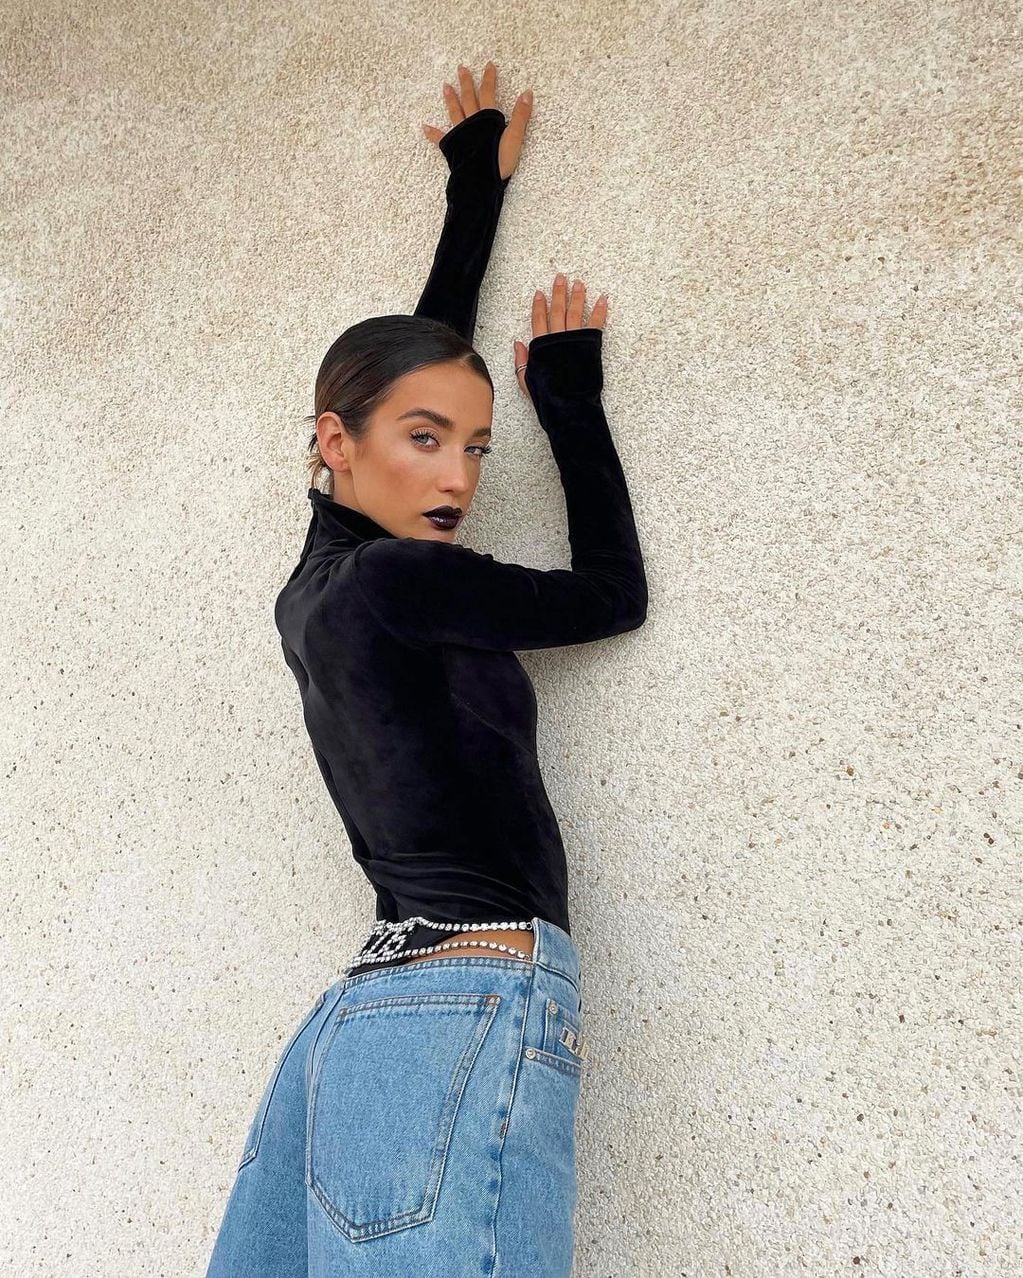 Con una pose sensual, María Pedraza causa sensación en Instagram.